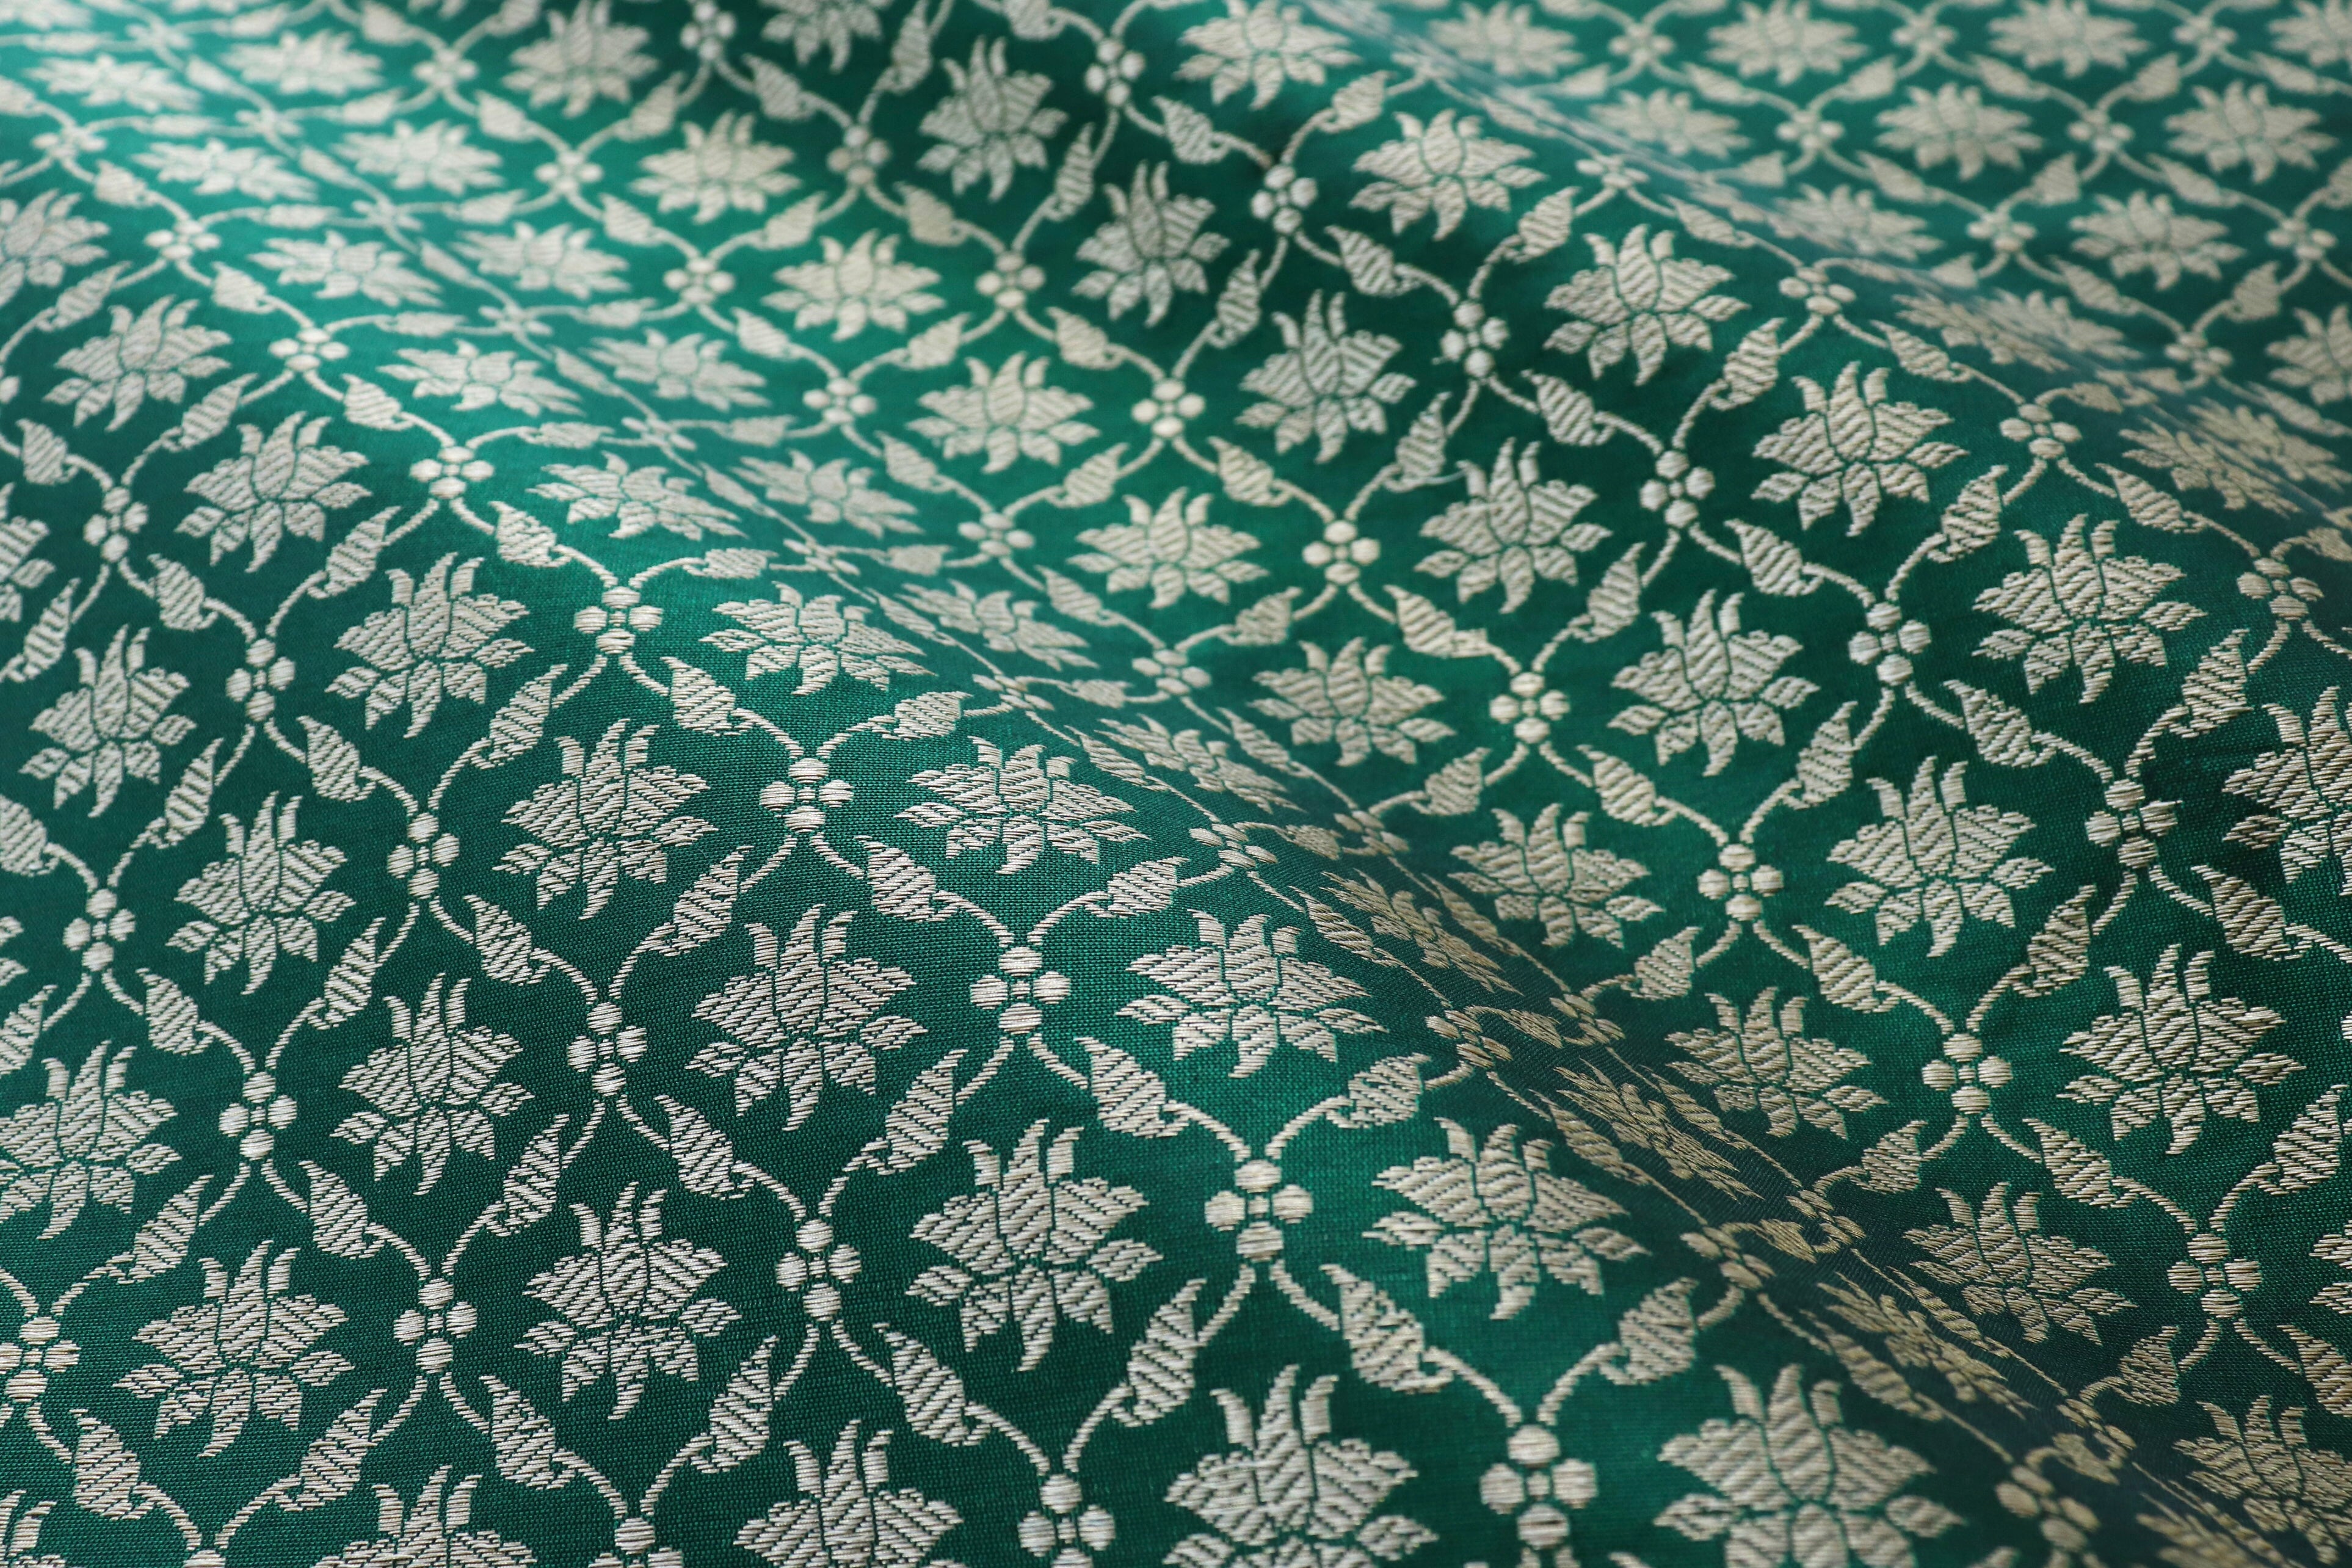 Forest Green Pure Katan Silk Handloom Banarasi Fabric